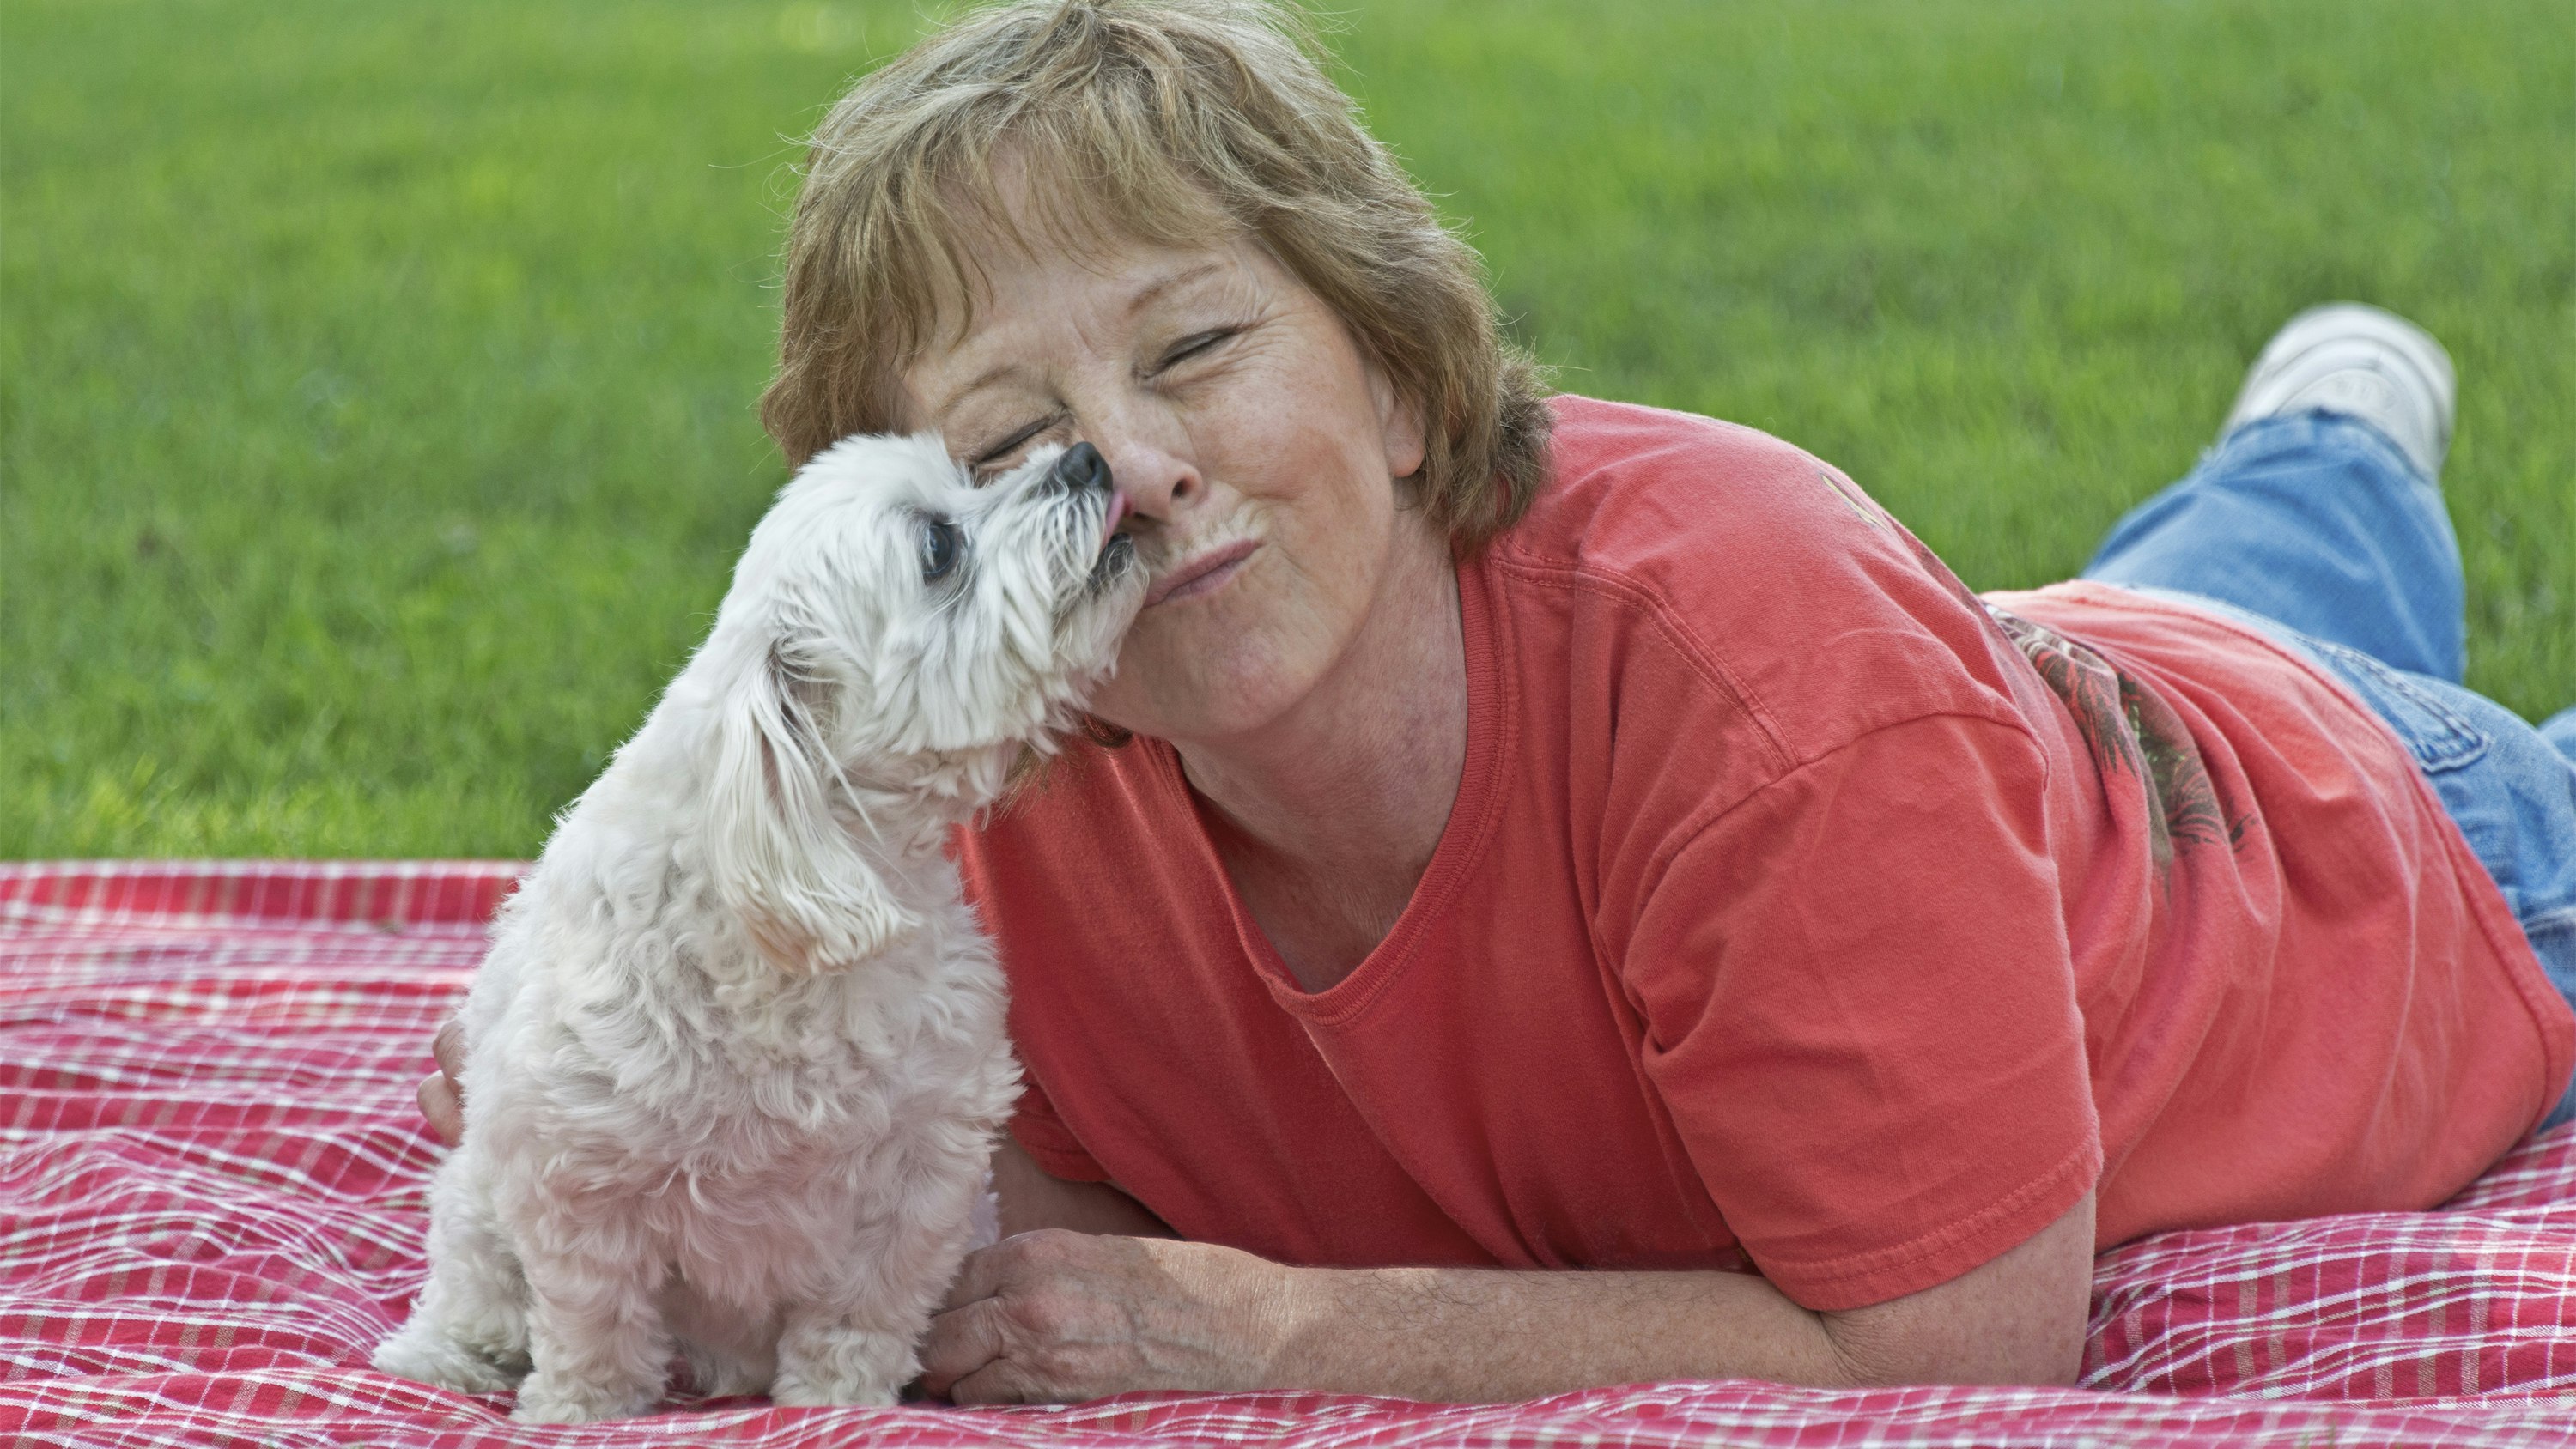 Kvinde ligger på græsset med en hundehvalp. Hun er ikke ensom længere